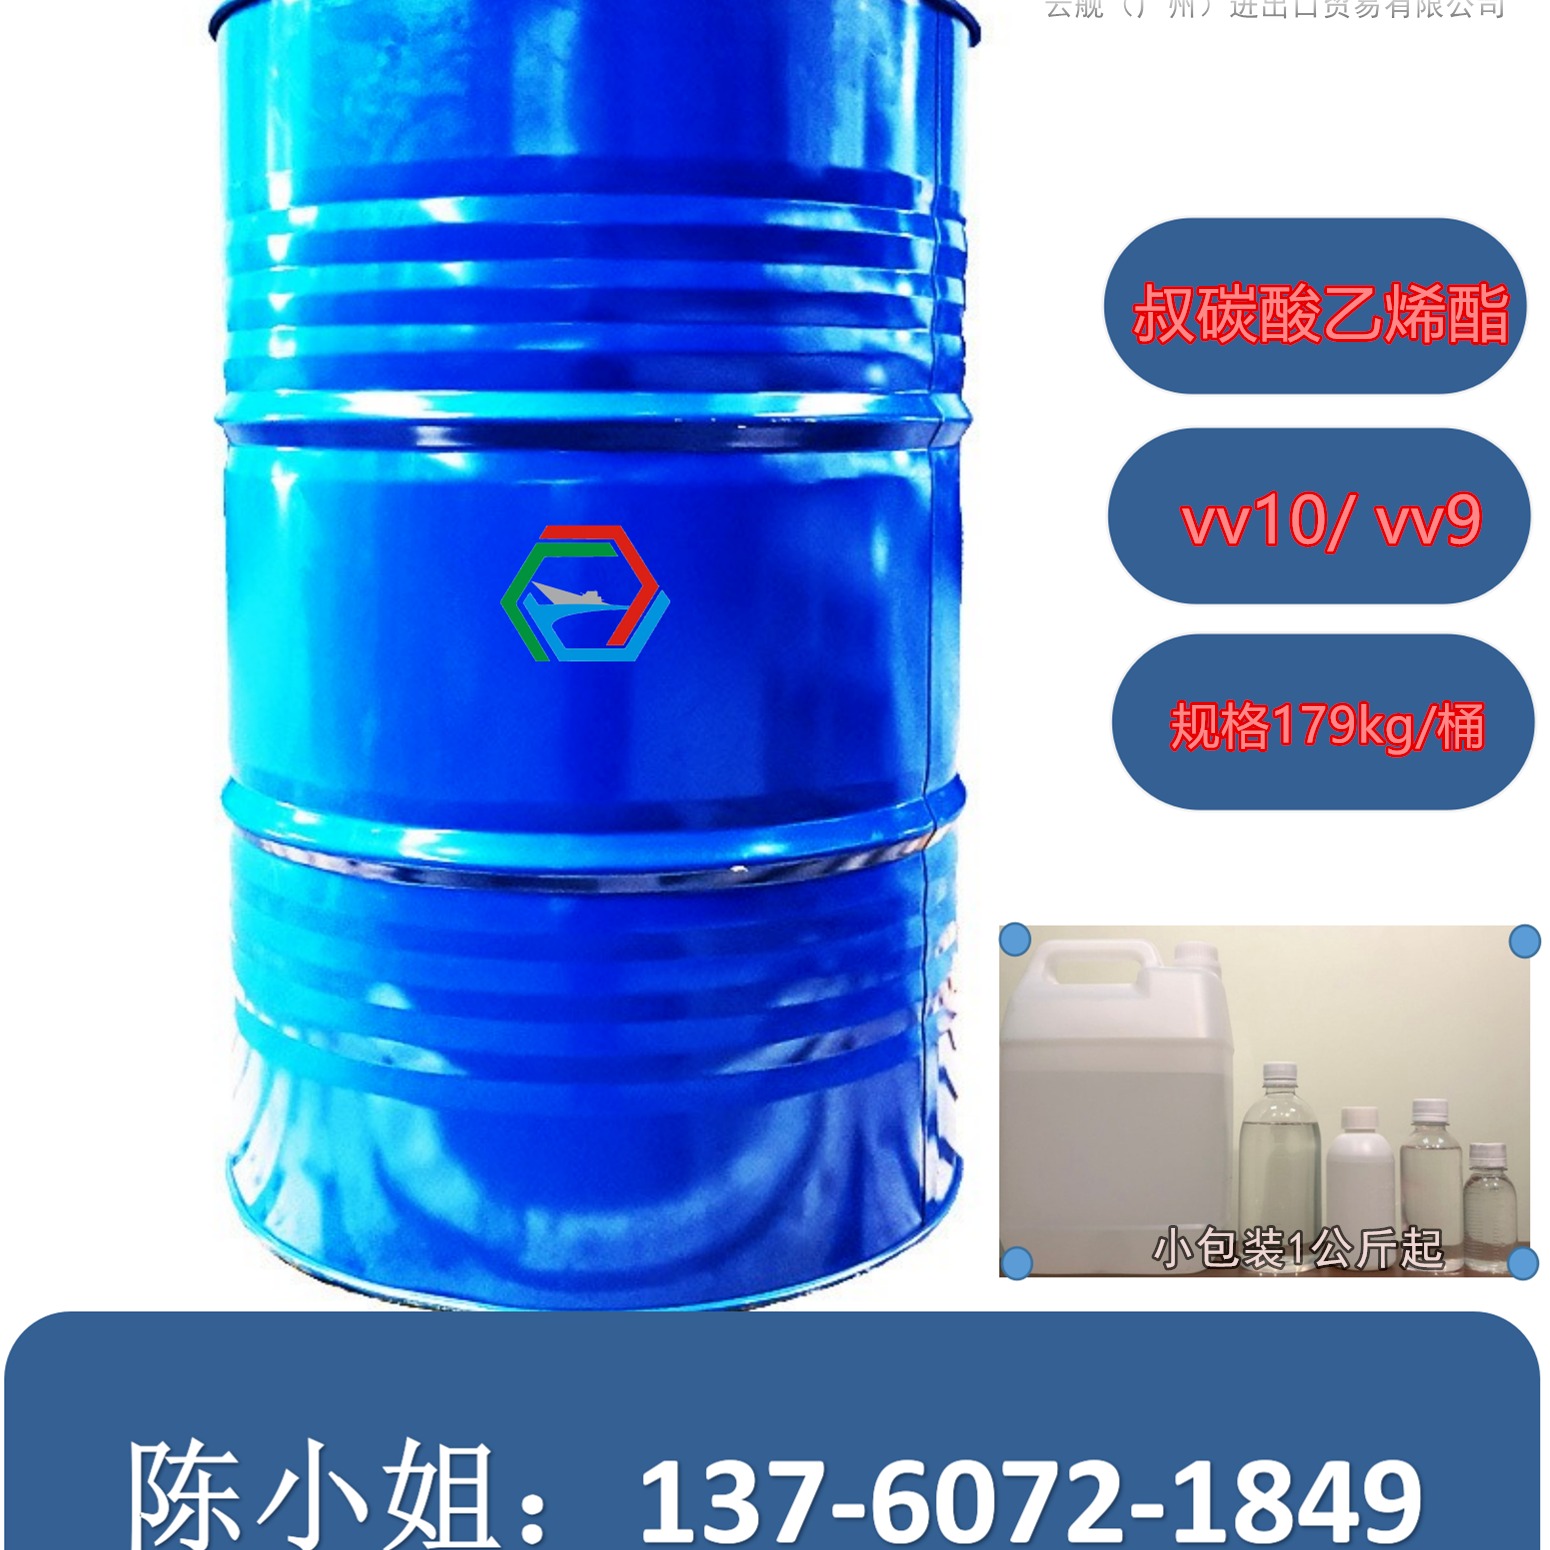 叔碳酸乙烯酯荷兰 供应 vv-10 vv9  价格可谈 179KG/桶-供应广东广州